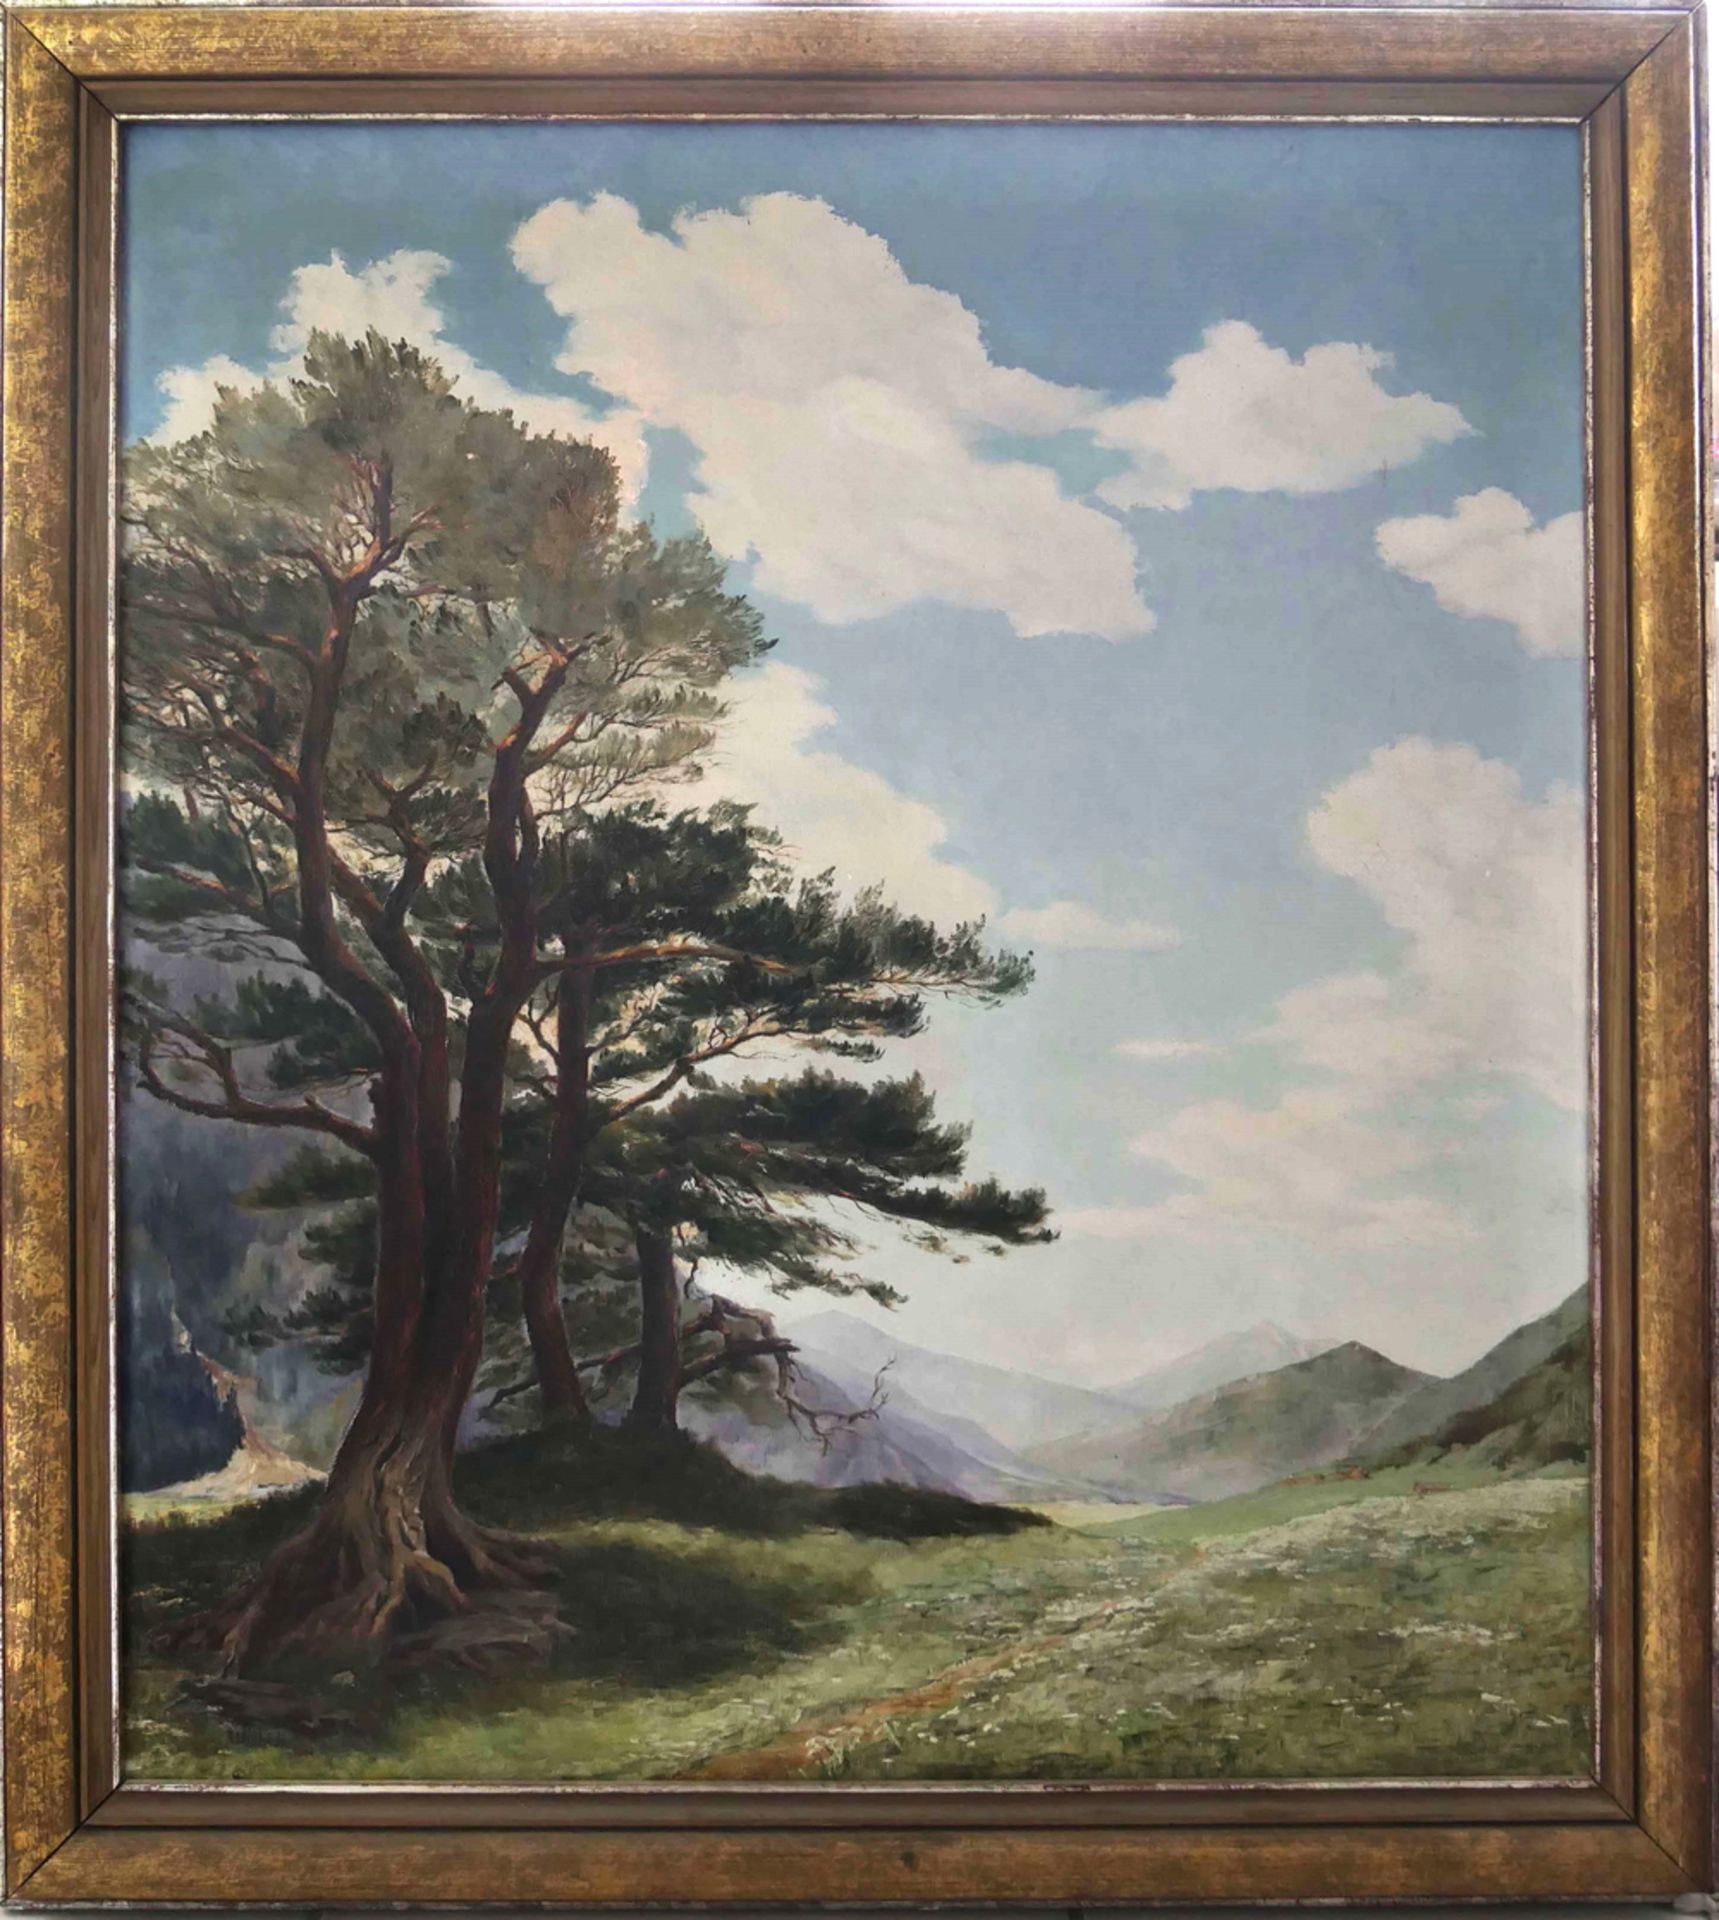 W. Wilde, Ölgemälde auf Leinwand "Gröbelalm bei Mittenwald", links unten signiert W.Wilde1940.